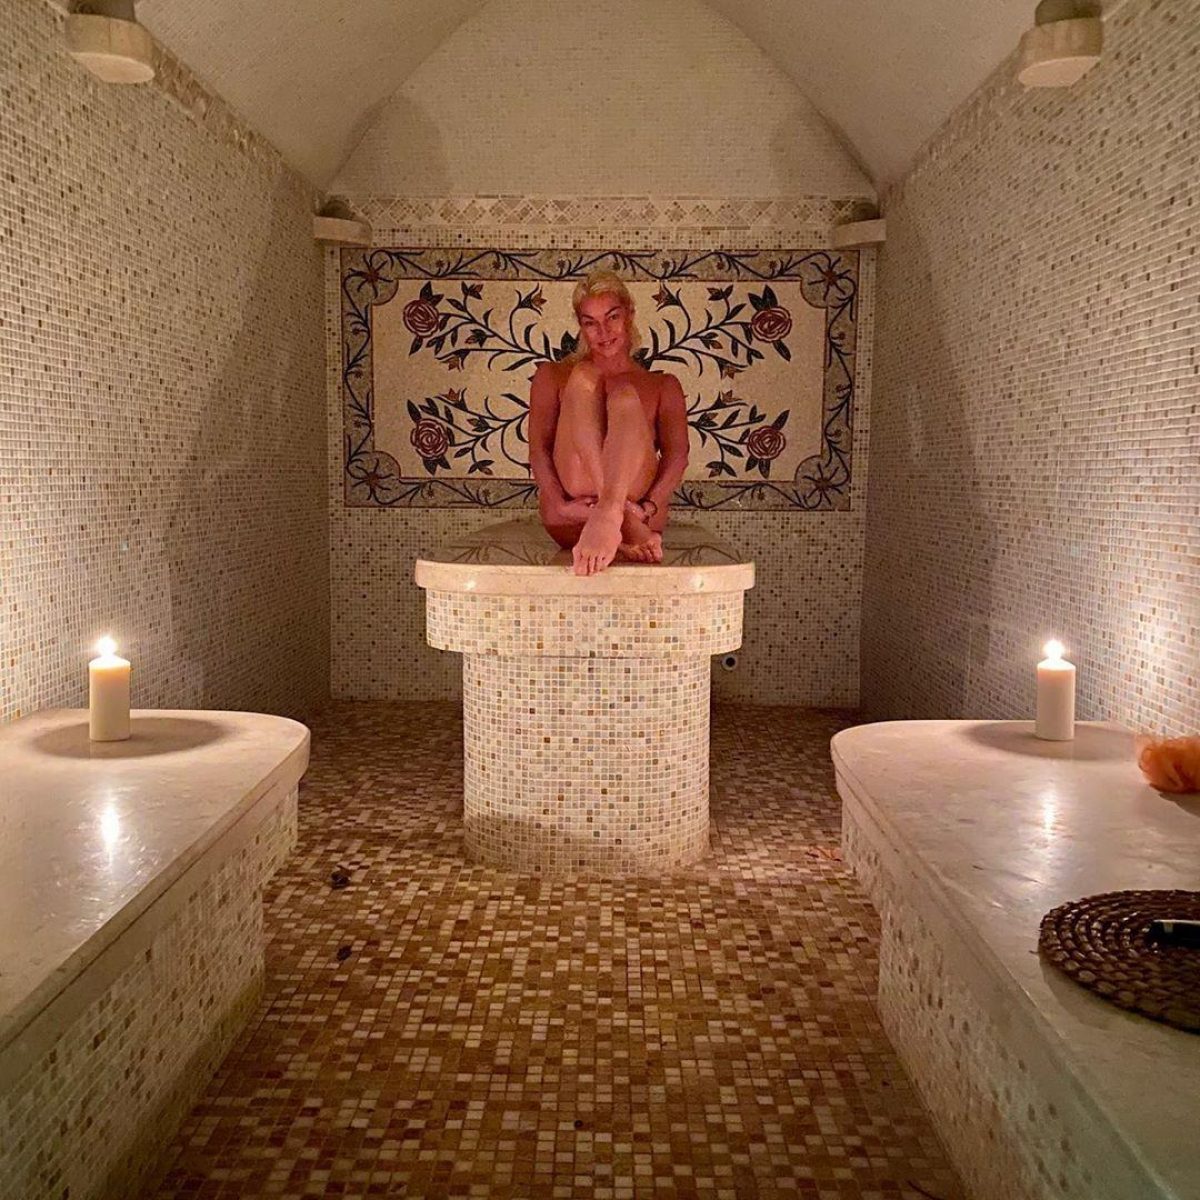 Голая Волочкова - Волочкова показала себя голой в бане (фото 18+)